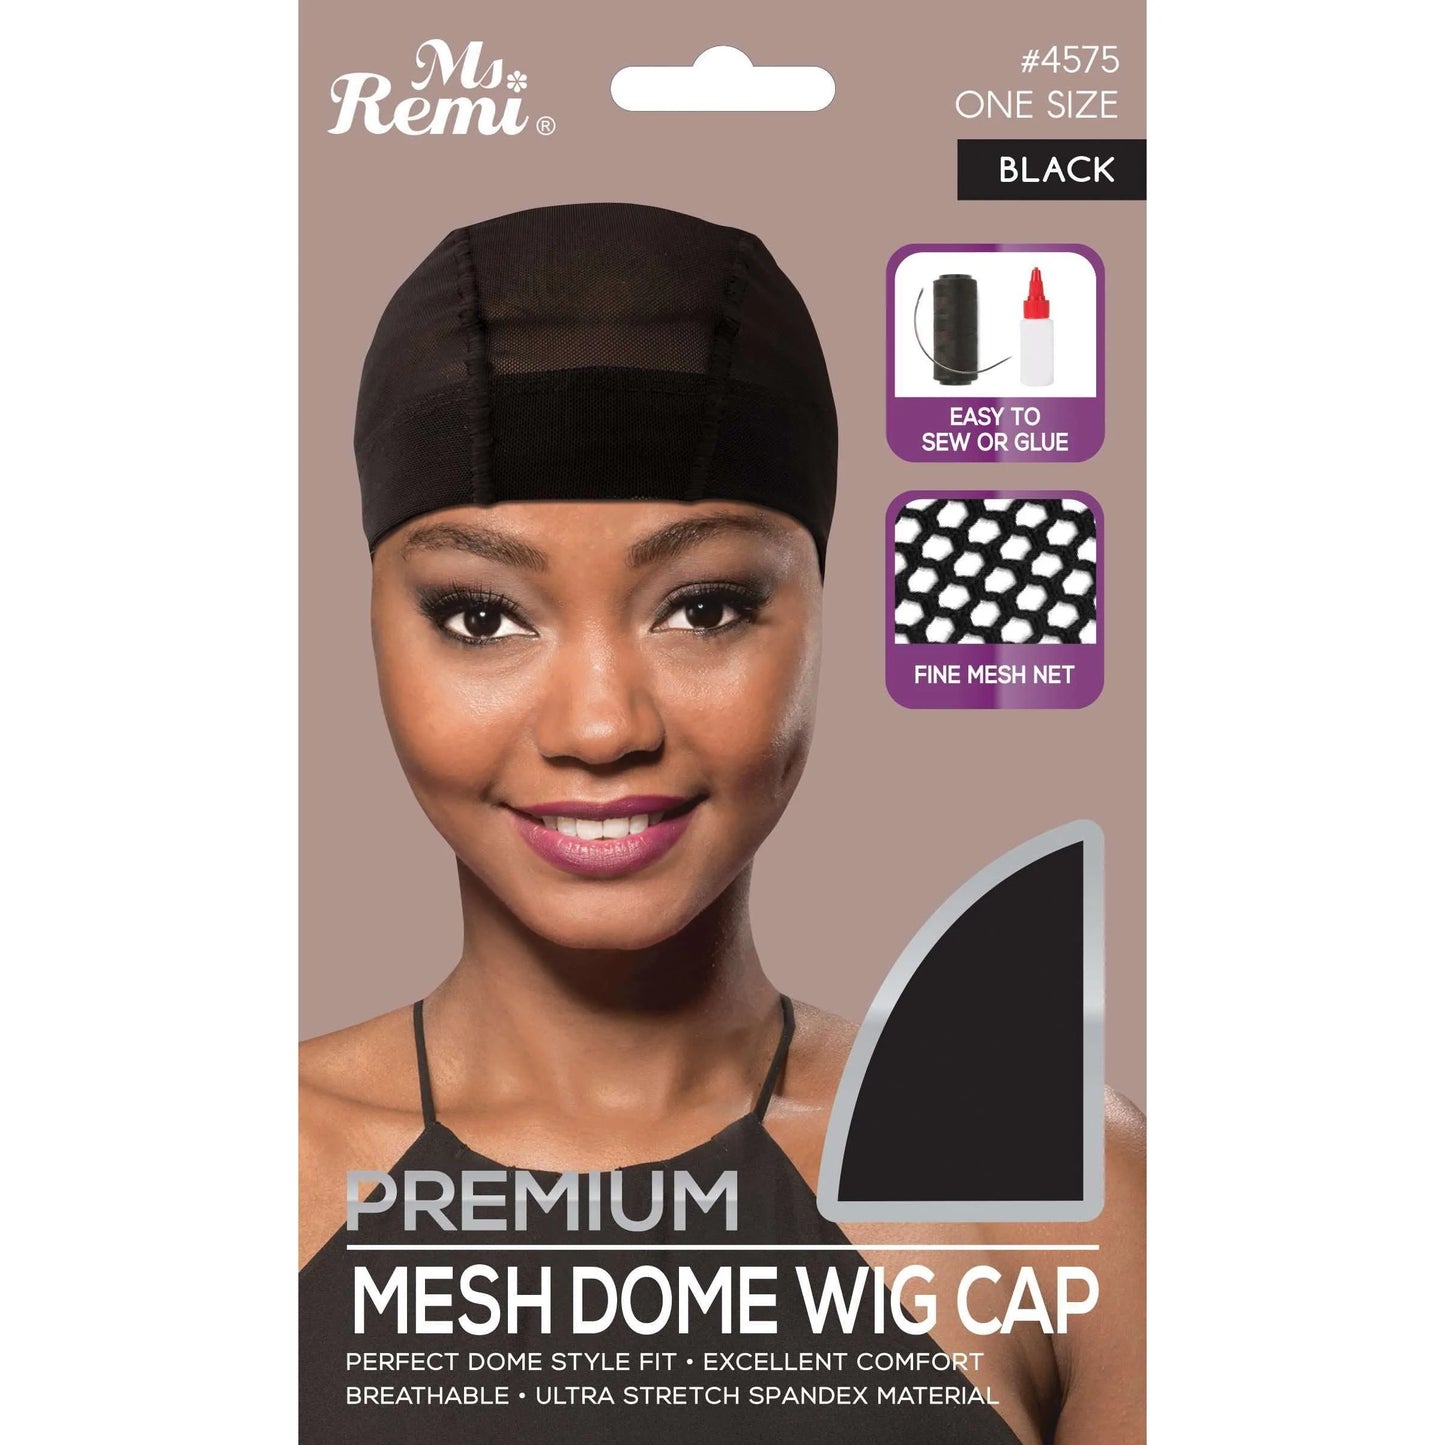 Premium Mesh Dome Wig Cap - Black